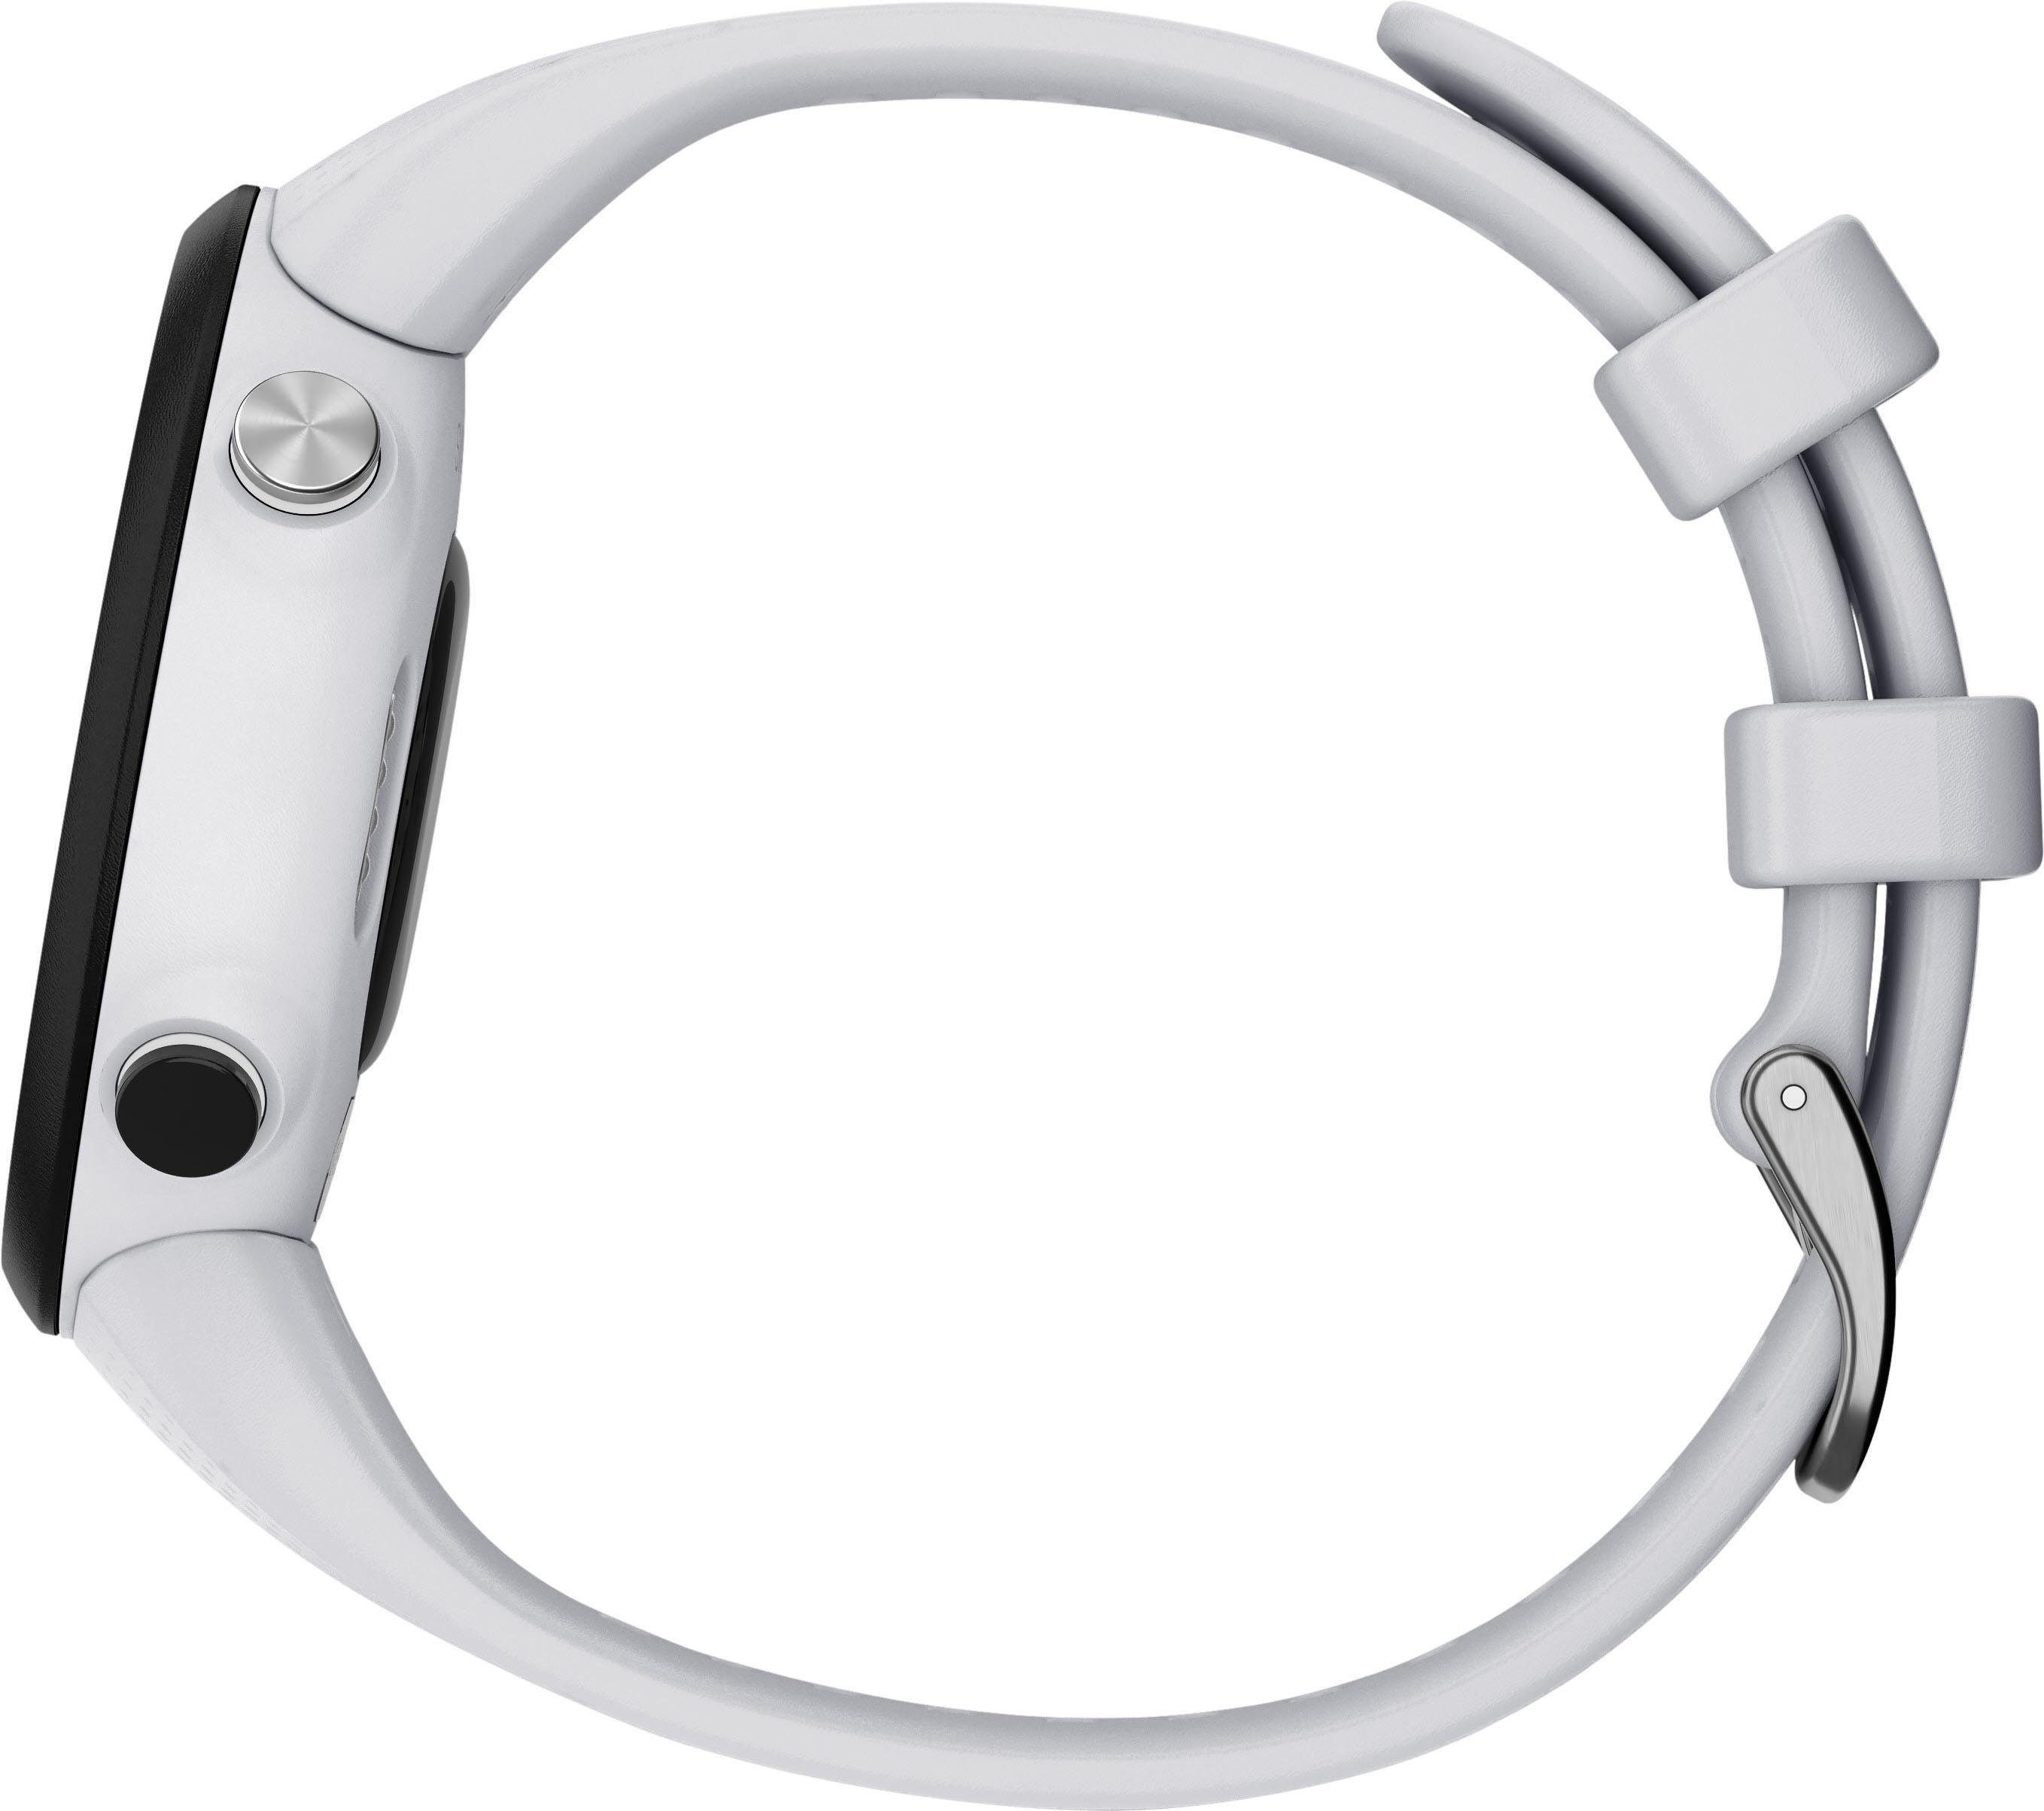 Zoll) Smartwatch cm/1,04 Swim2 (2,63 mit 20 Silikon-Armband Garmin weiß mm